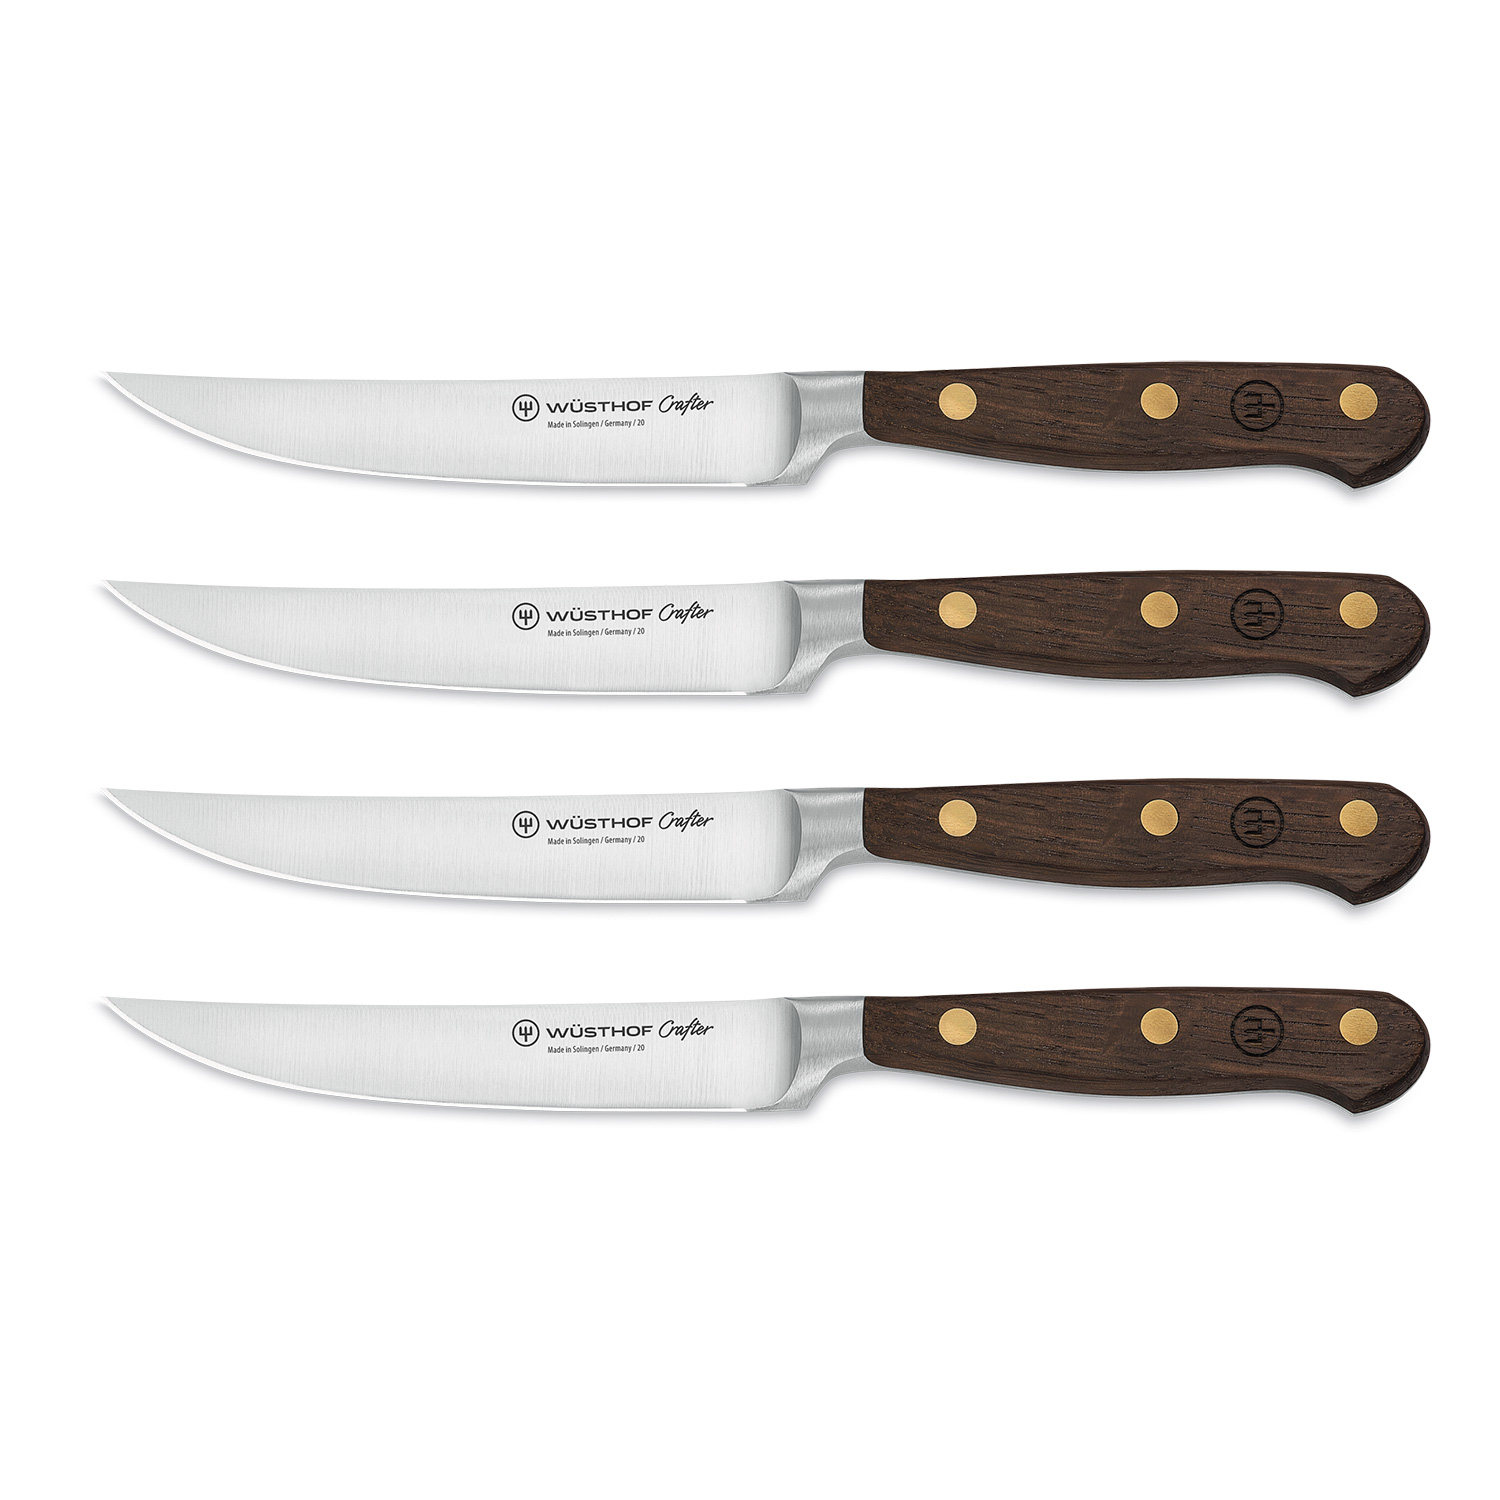 https://api-prod.royaldesign.se/api/products/image/11/wusthof-crafter-steak-knives-4-pack-0